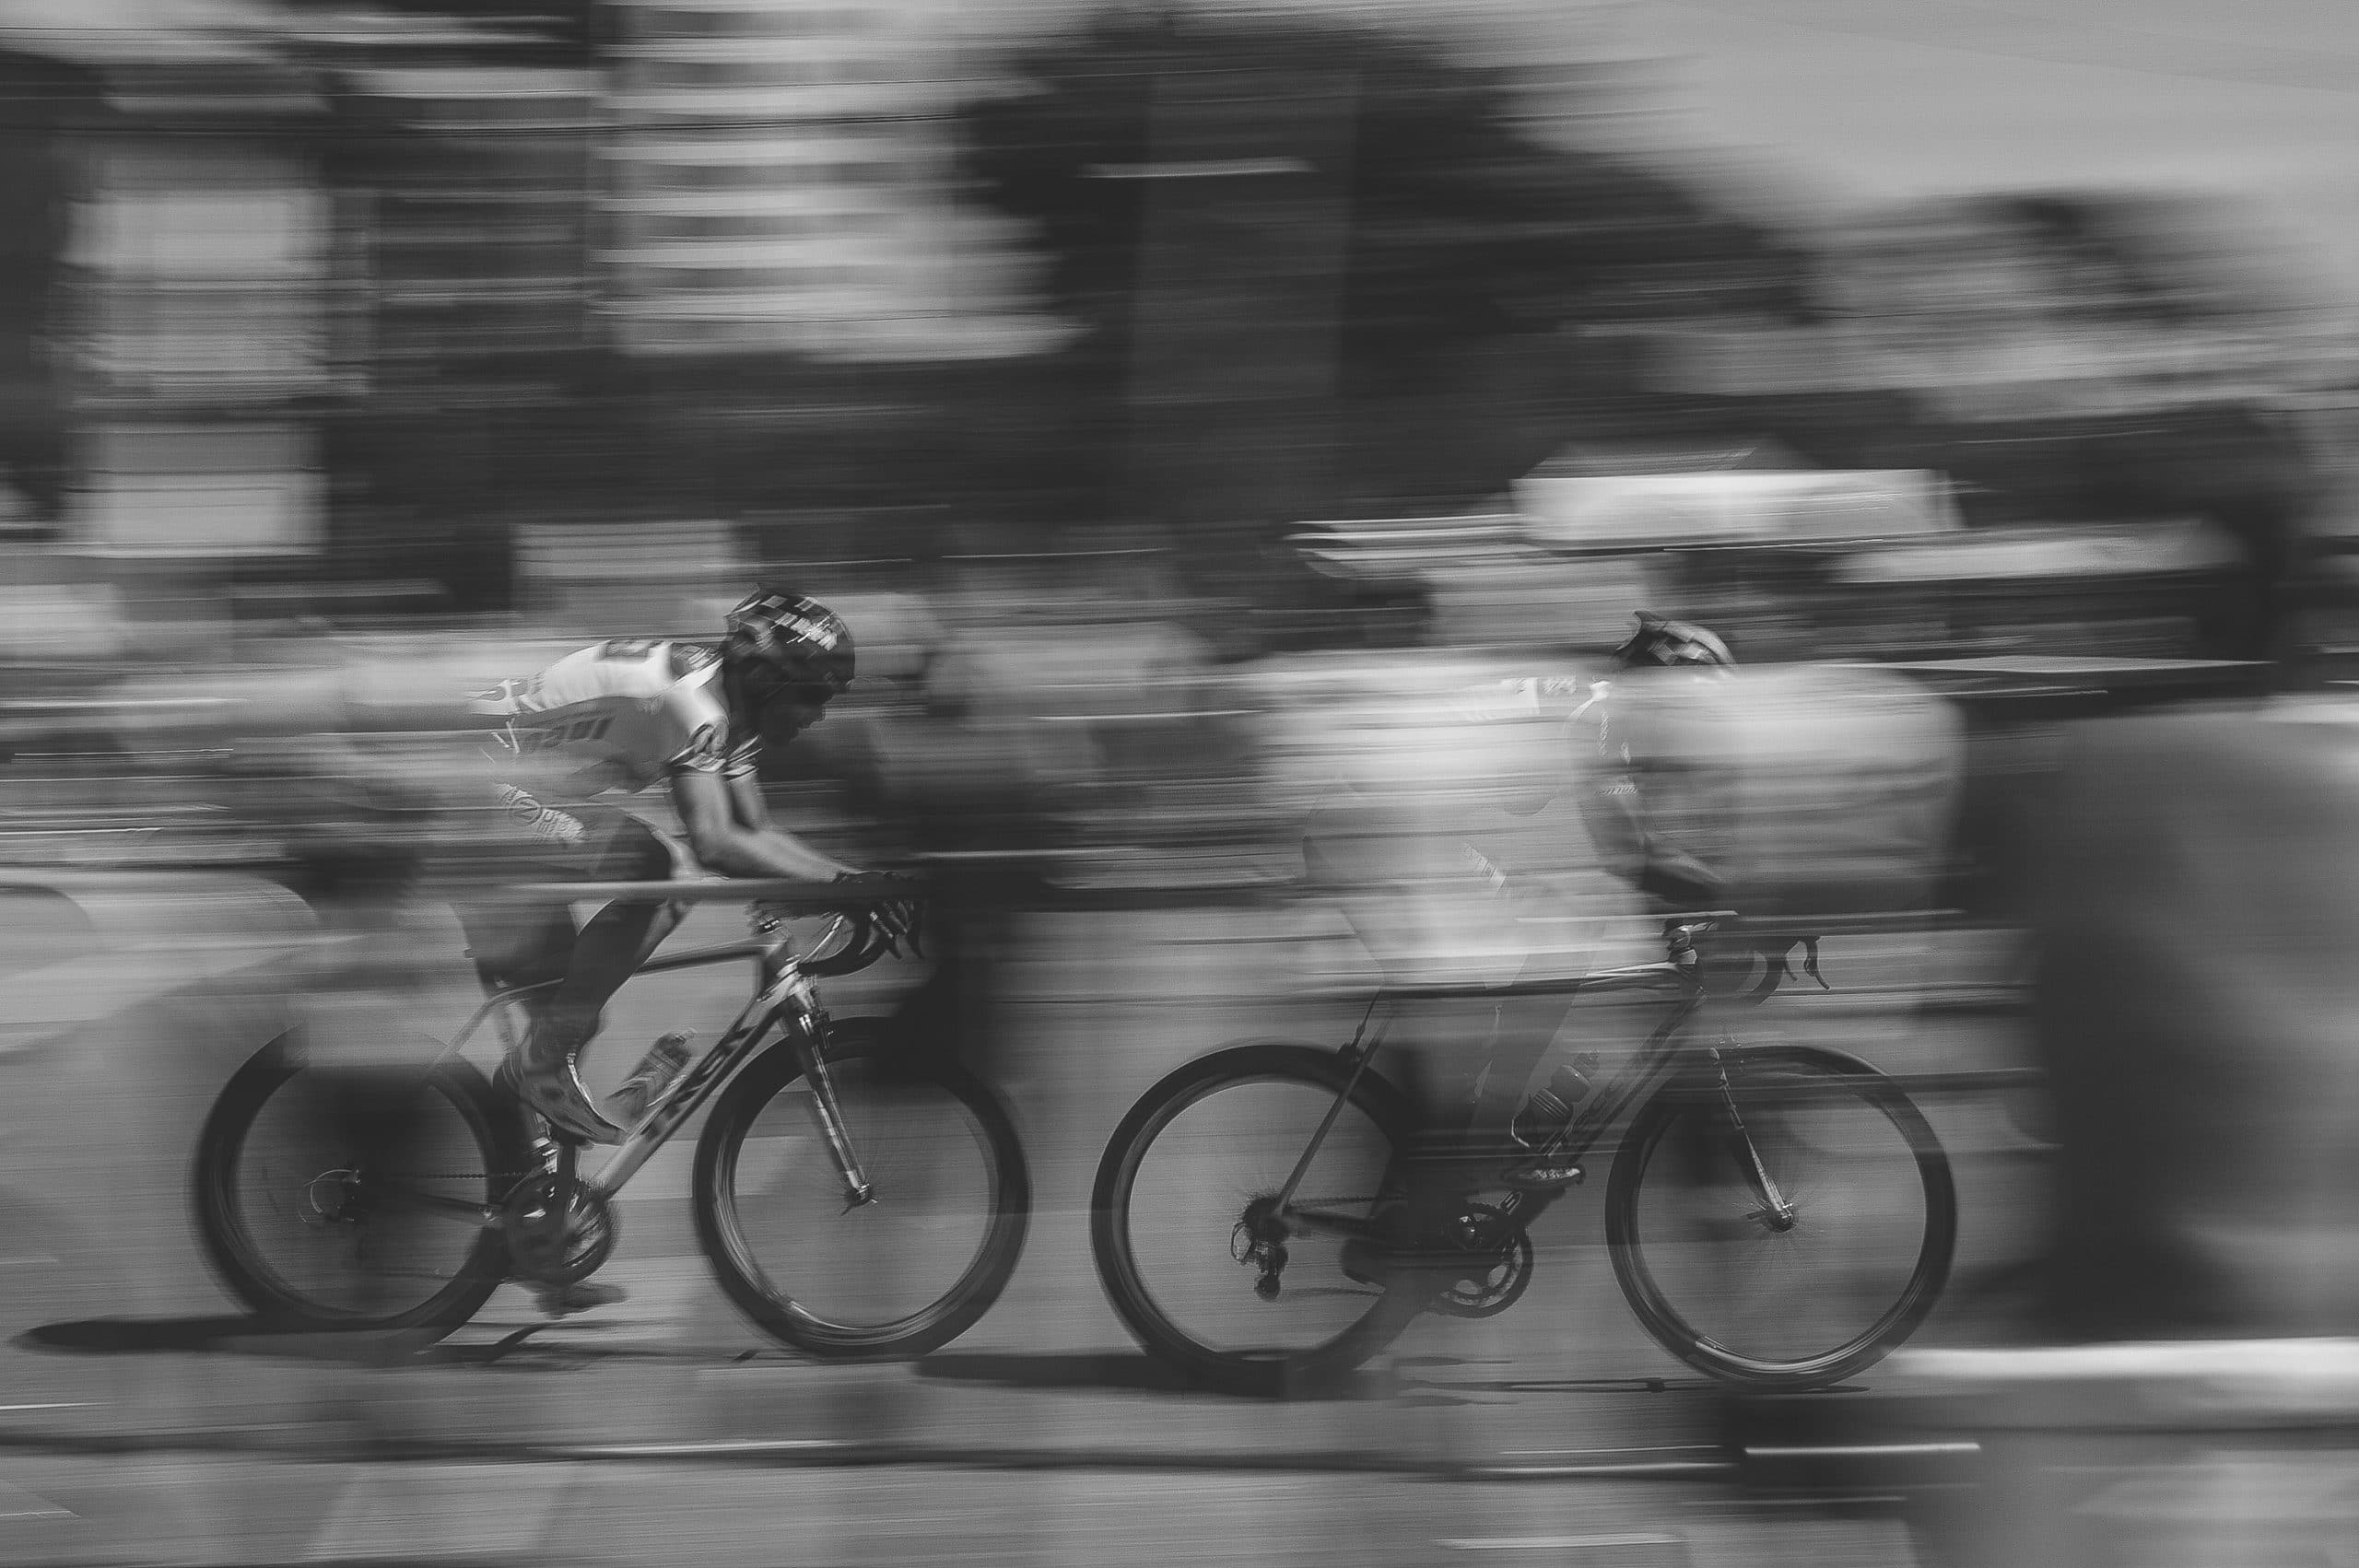 découvrez tout sur le cyclisme et les équipements nécessaires pour pratiquer ce sport passionnant. conseils pour débutants et passionnés de vélo.